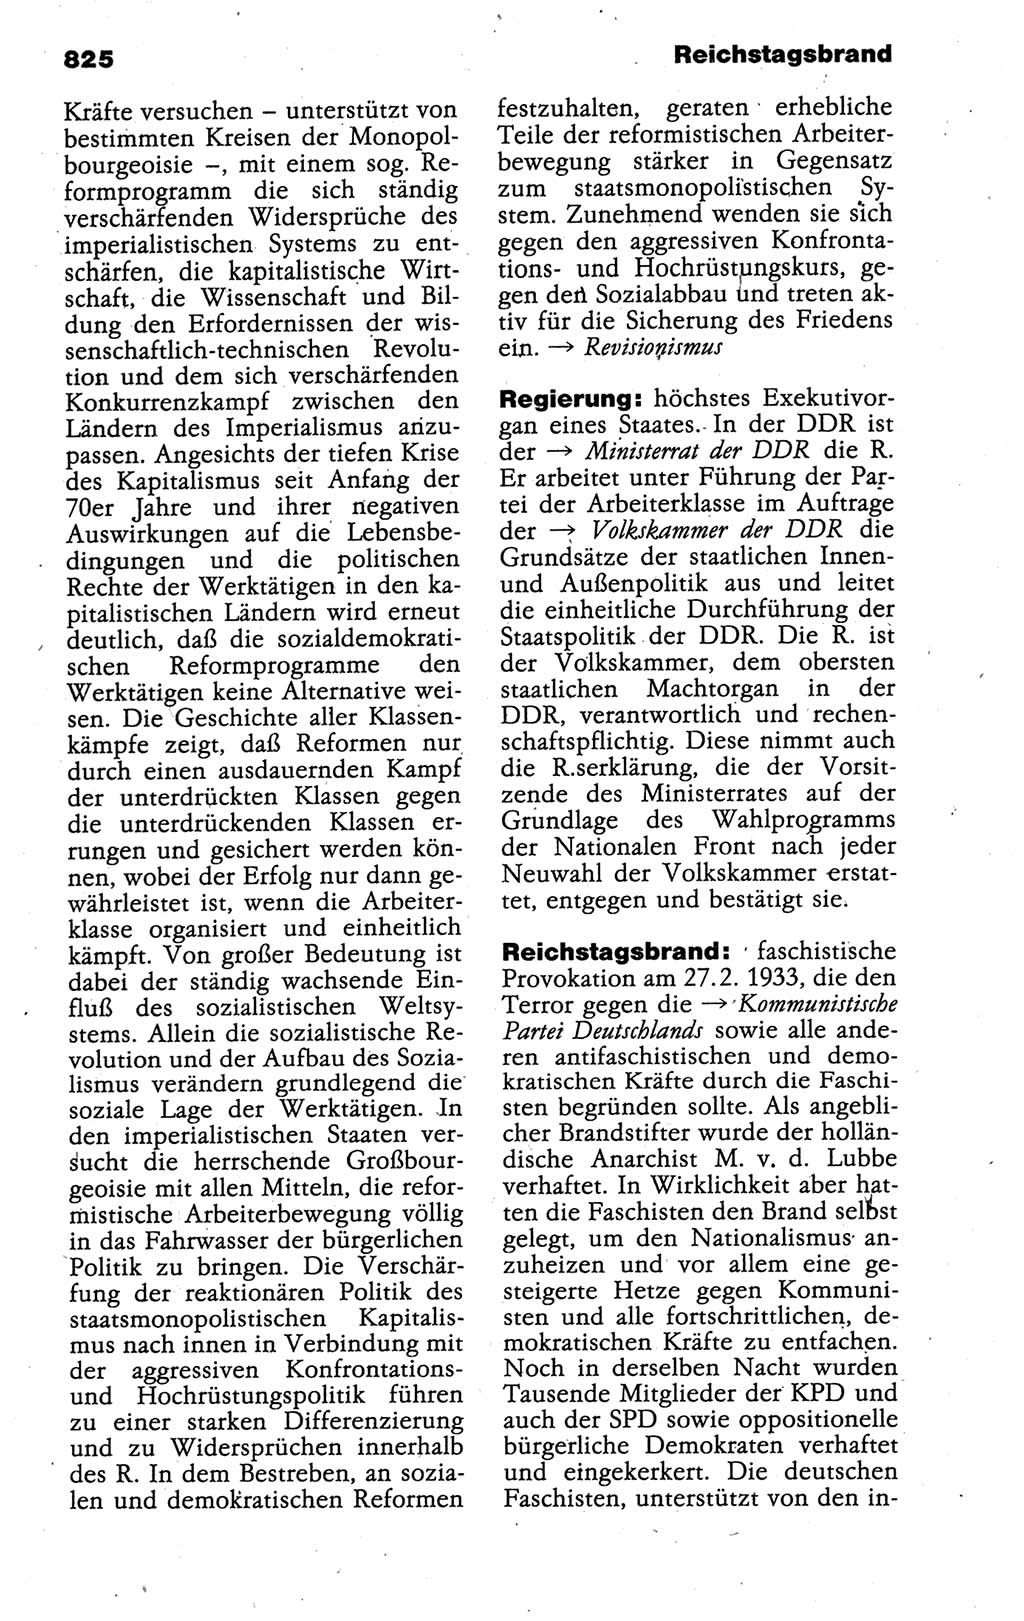 Kleines politisches Wörterbuch [Deutsche Demokratische Republik (DDR)] 1988, Seite 825 (Kl. pol. Wb. DDR 1988, S. 825)